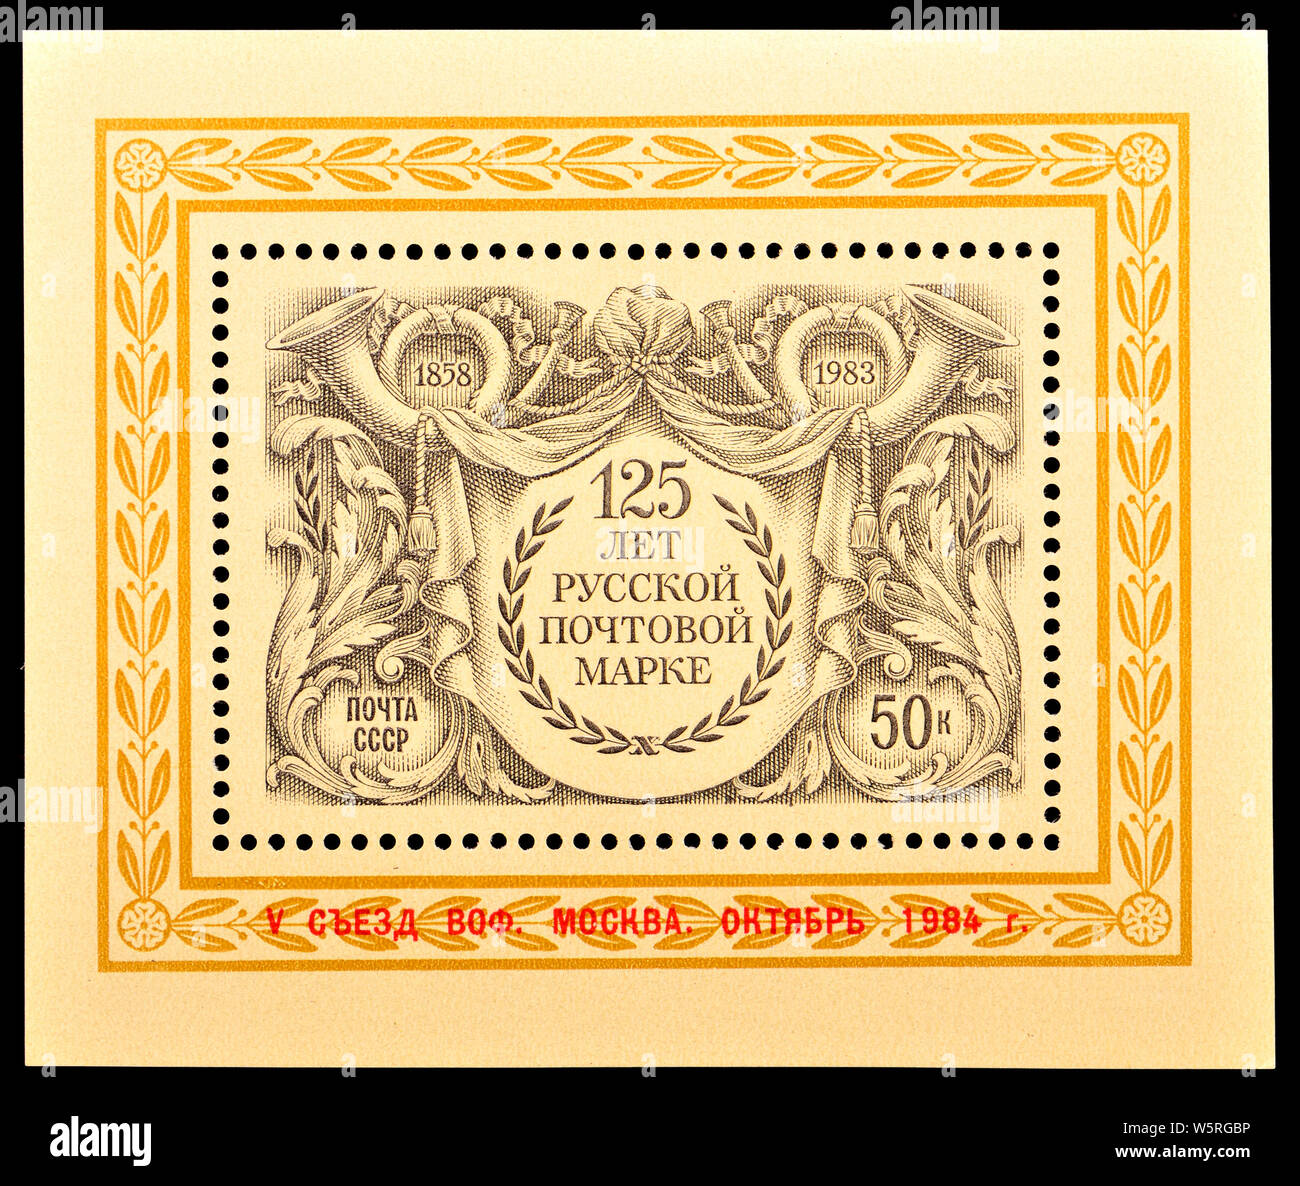 Timbre de l'Union soviétique (1983) Fiche technique mini : 125e anniversaire de la première fédération de timbre-poste. Banque D'Images